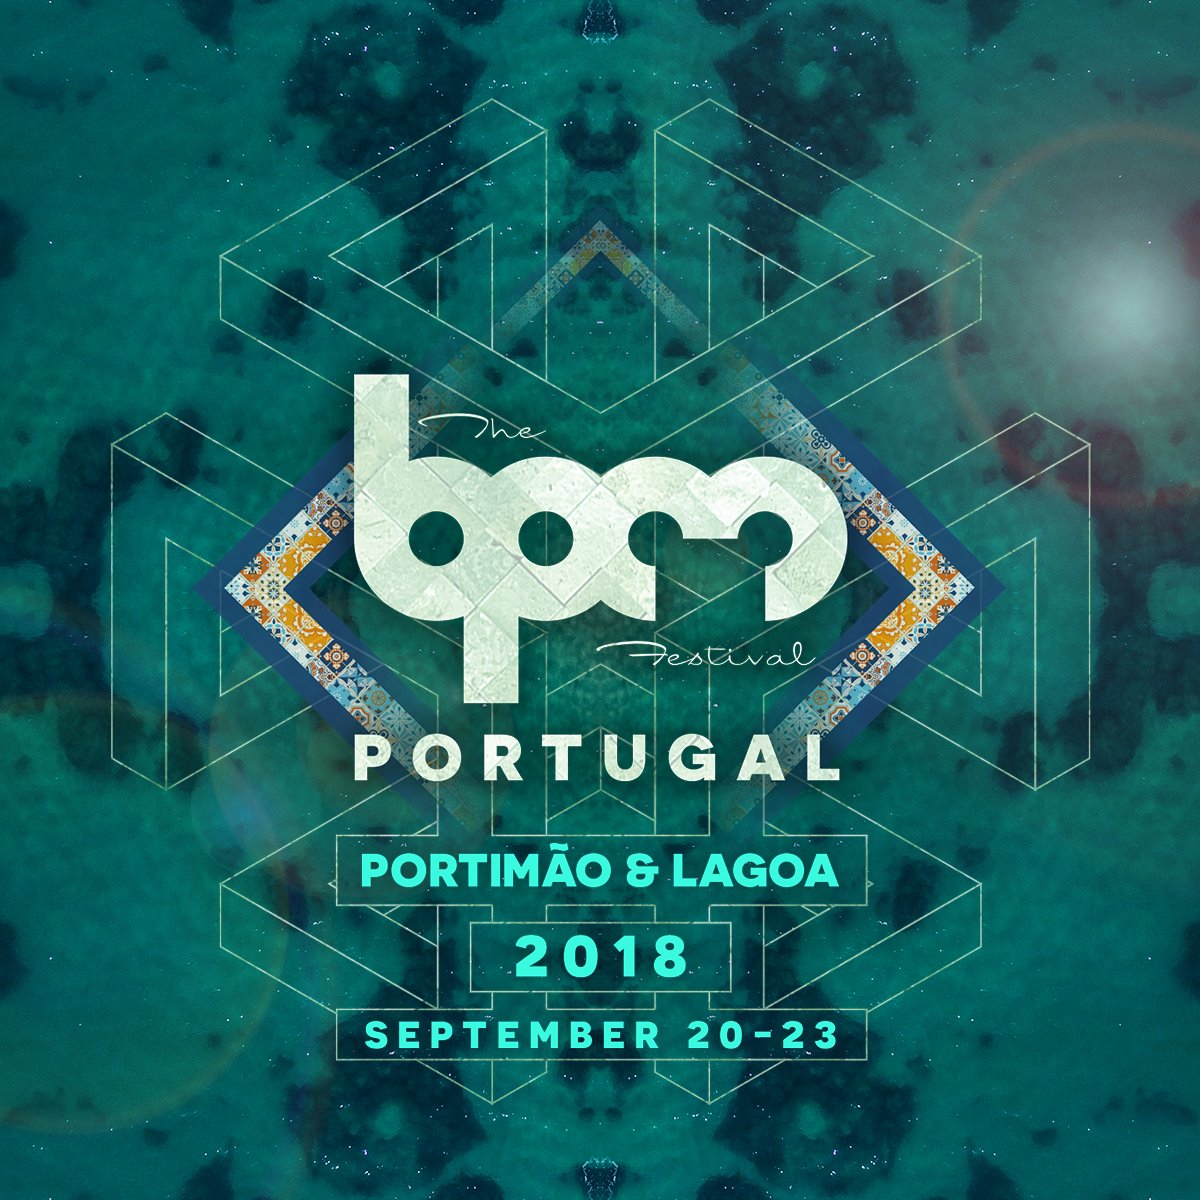 BPM Portugal Announces September 20-23 Return to Portimão & Lagoa & 2017 Thank You Movie